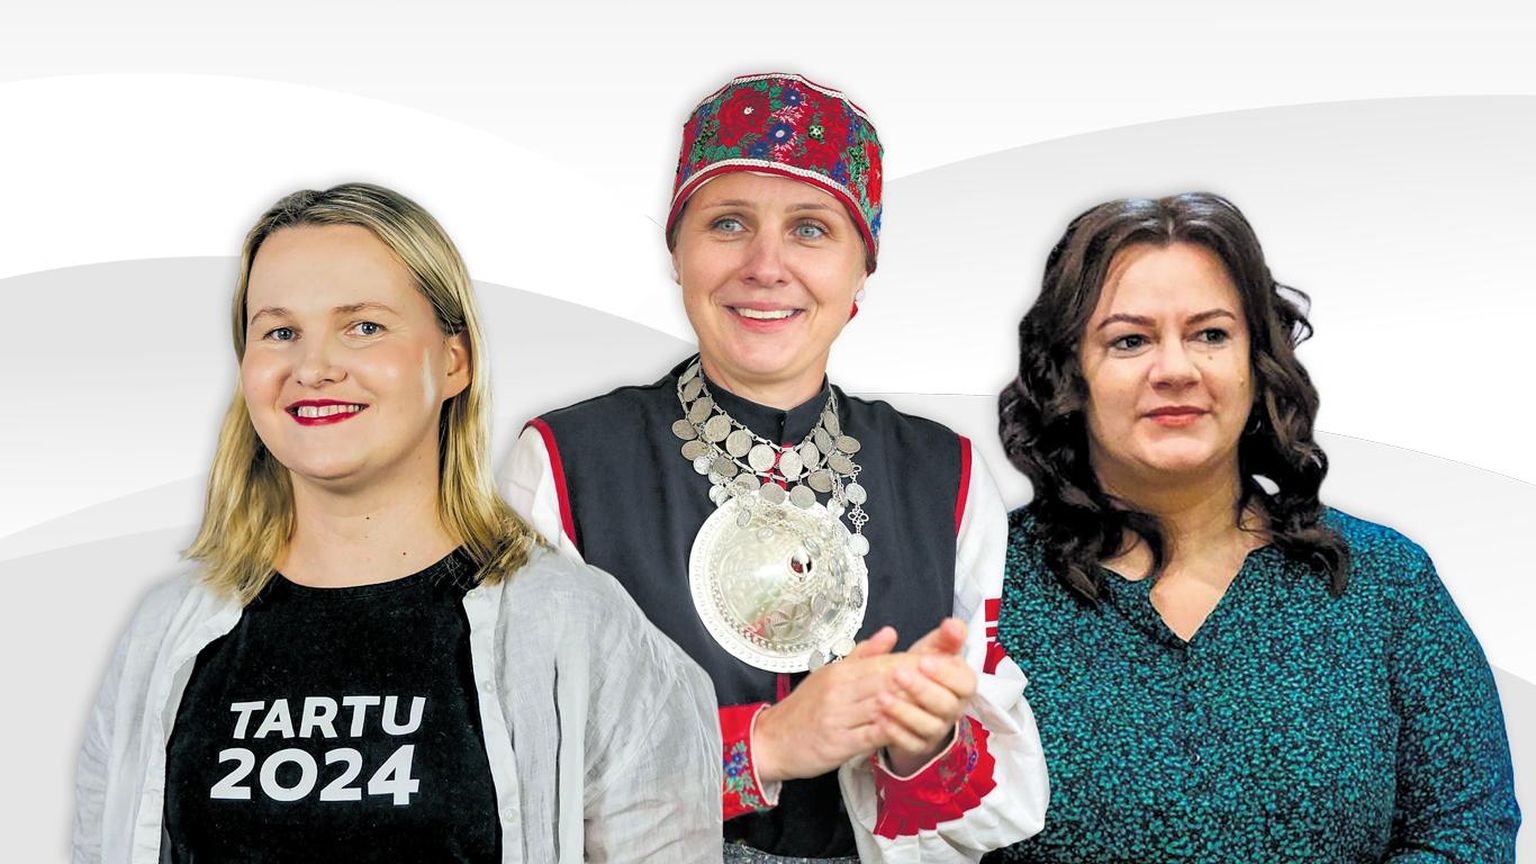 Kultuuripealinna Tartu 2024 Lõuna-Eesti koordinaator Annela Laaneots (vasakult), ülemsootska Anzelika Gomozova ja Valga vallavanem Monika Rogenbaum.